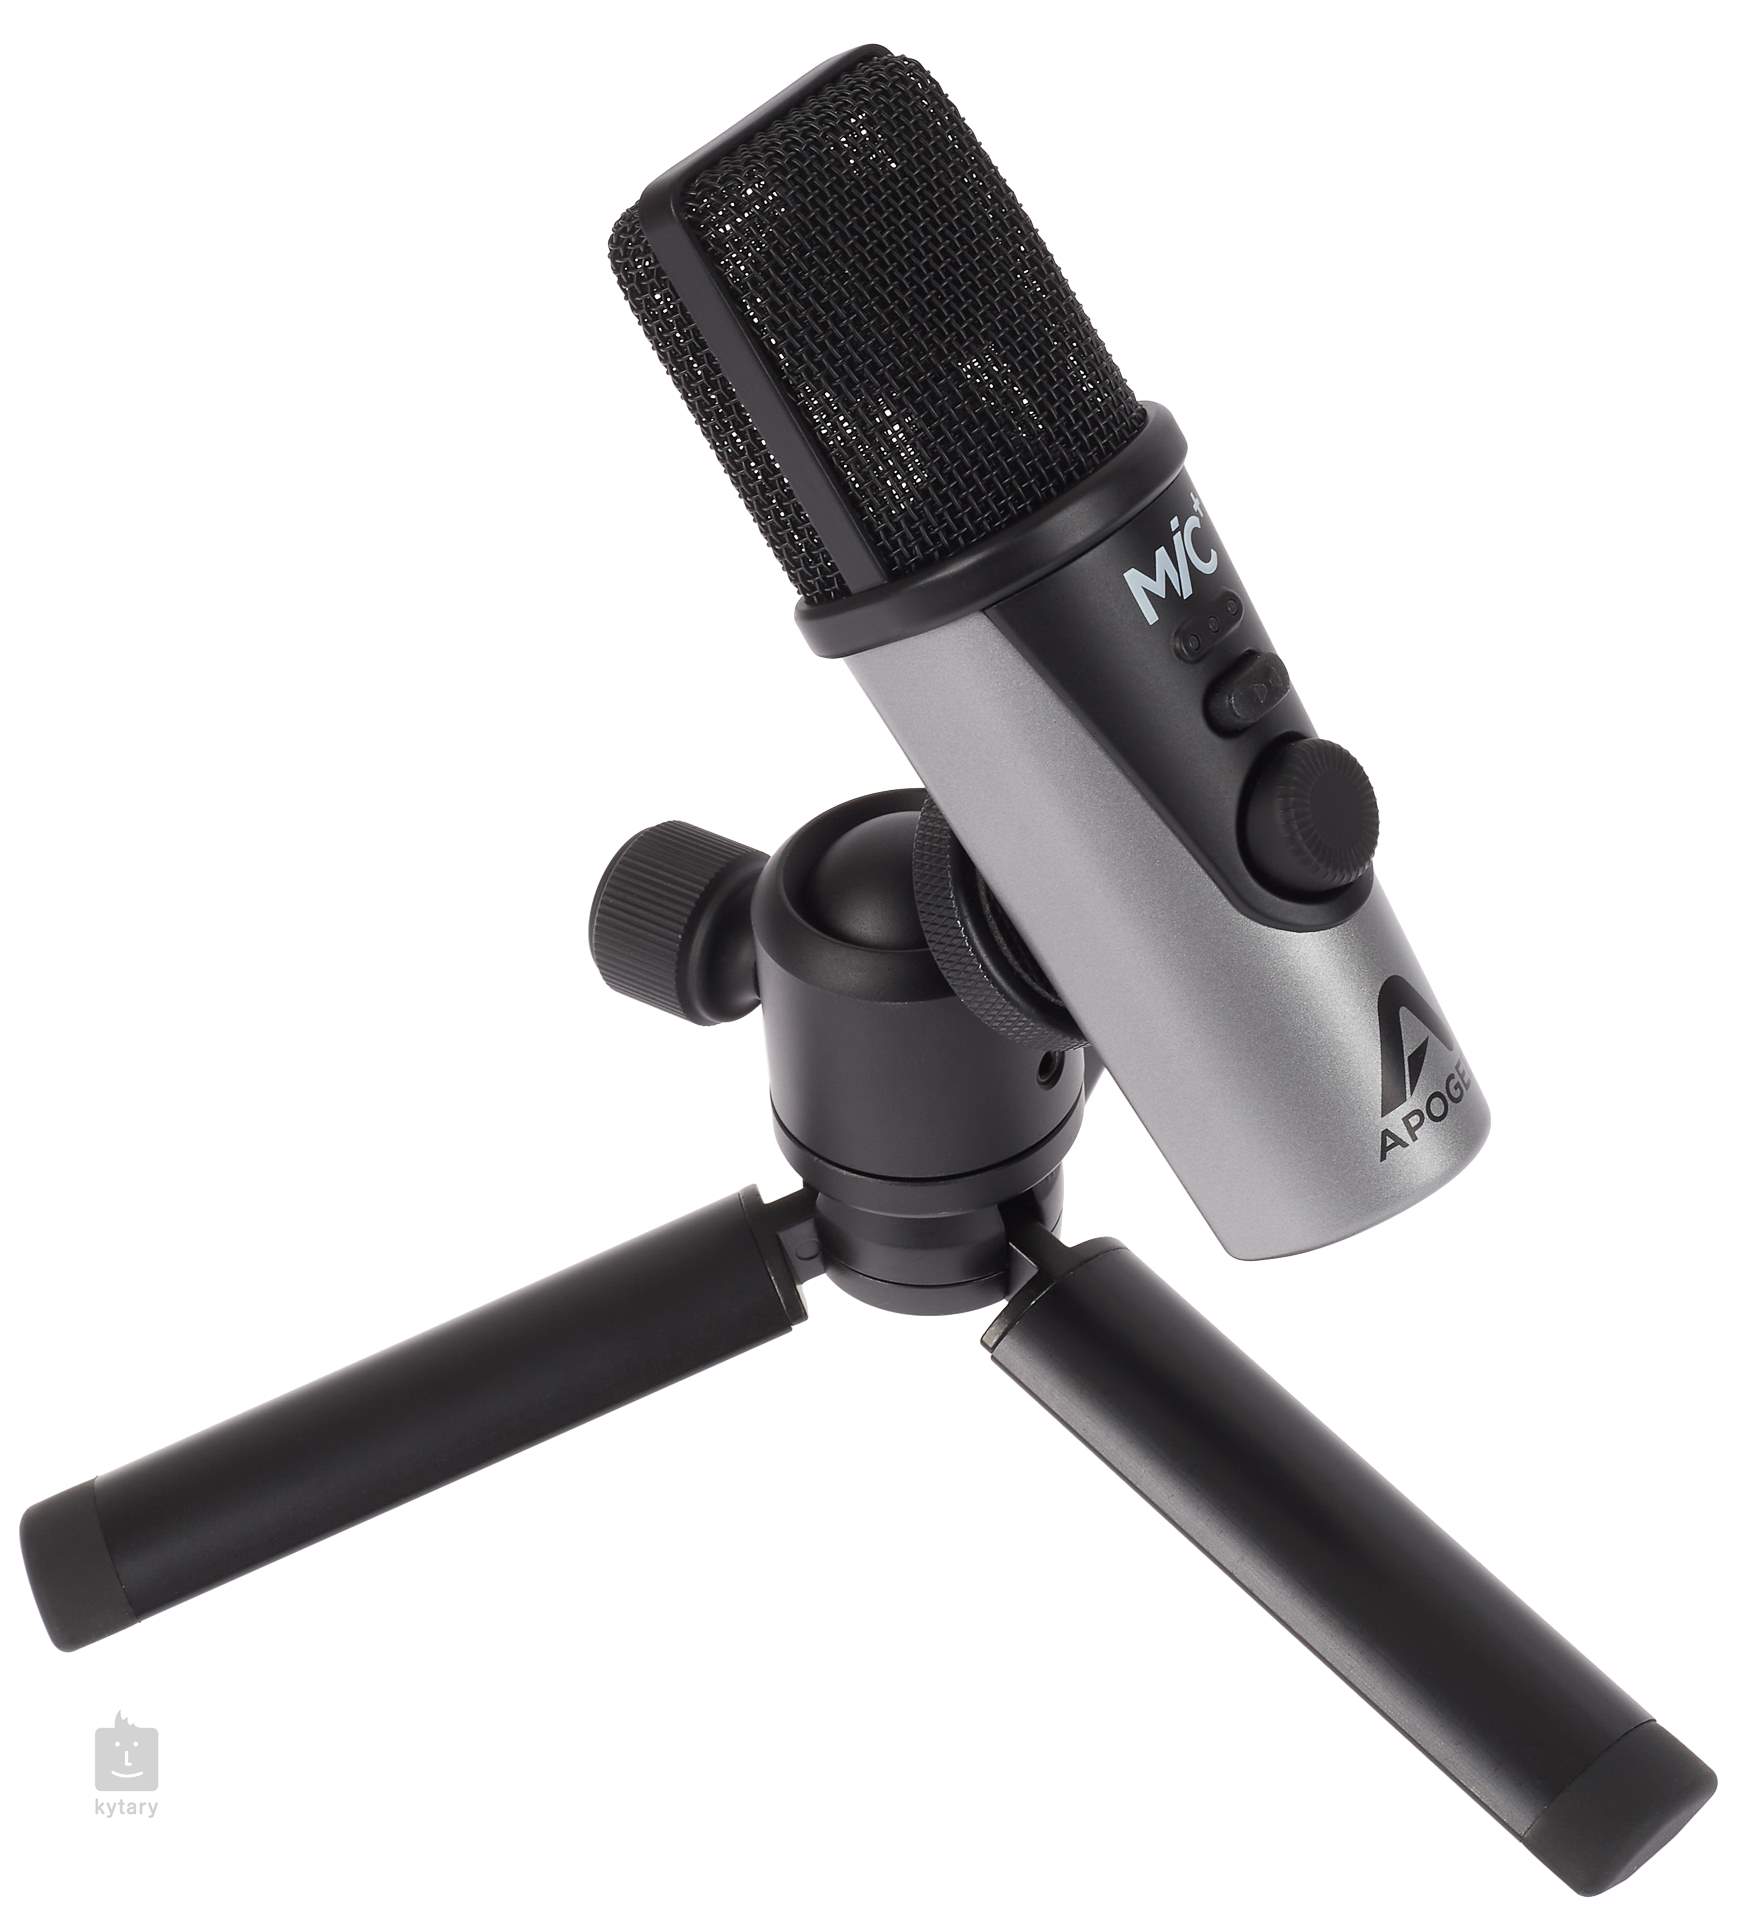 Microphones dynamiques ou à condensateur - Quel est le plus adapté